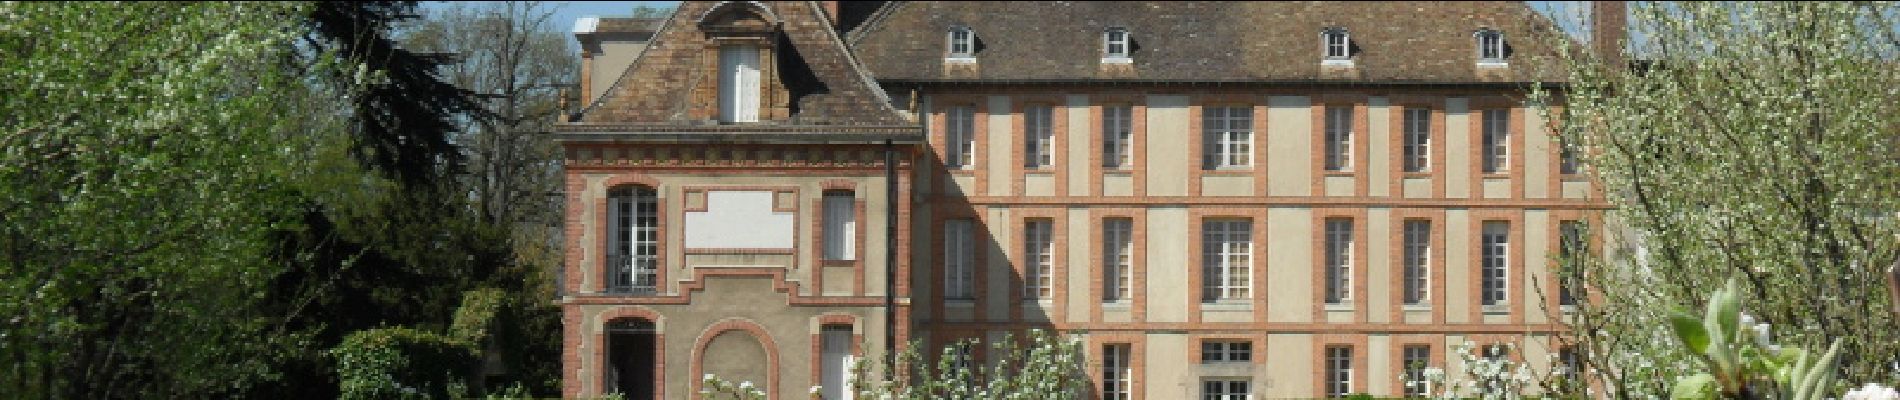 Point of interest Magny-les-Hameaux - Musée national des Granges de Port-Royal - Photo